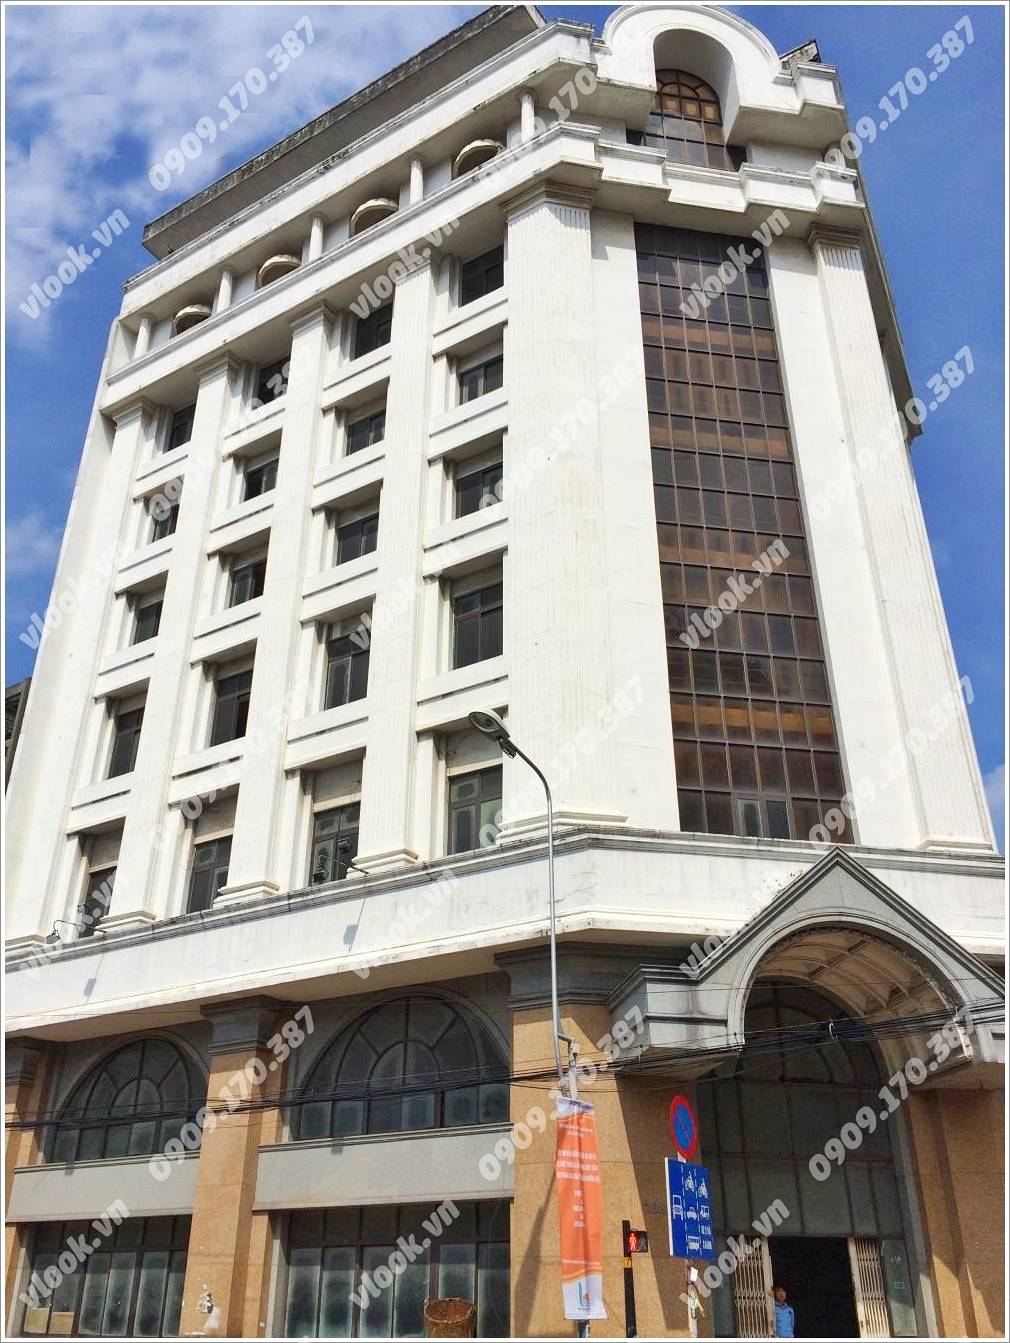 Cao ốc cho thuê văn phòng ACB Building, Trần Hưng Đạo, Quận 5, TPHCM - vlook.vn